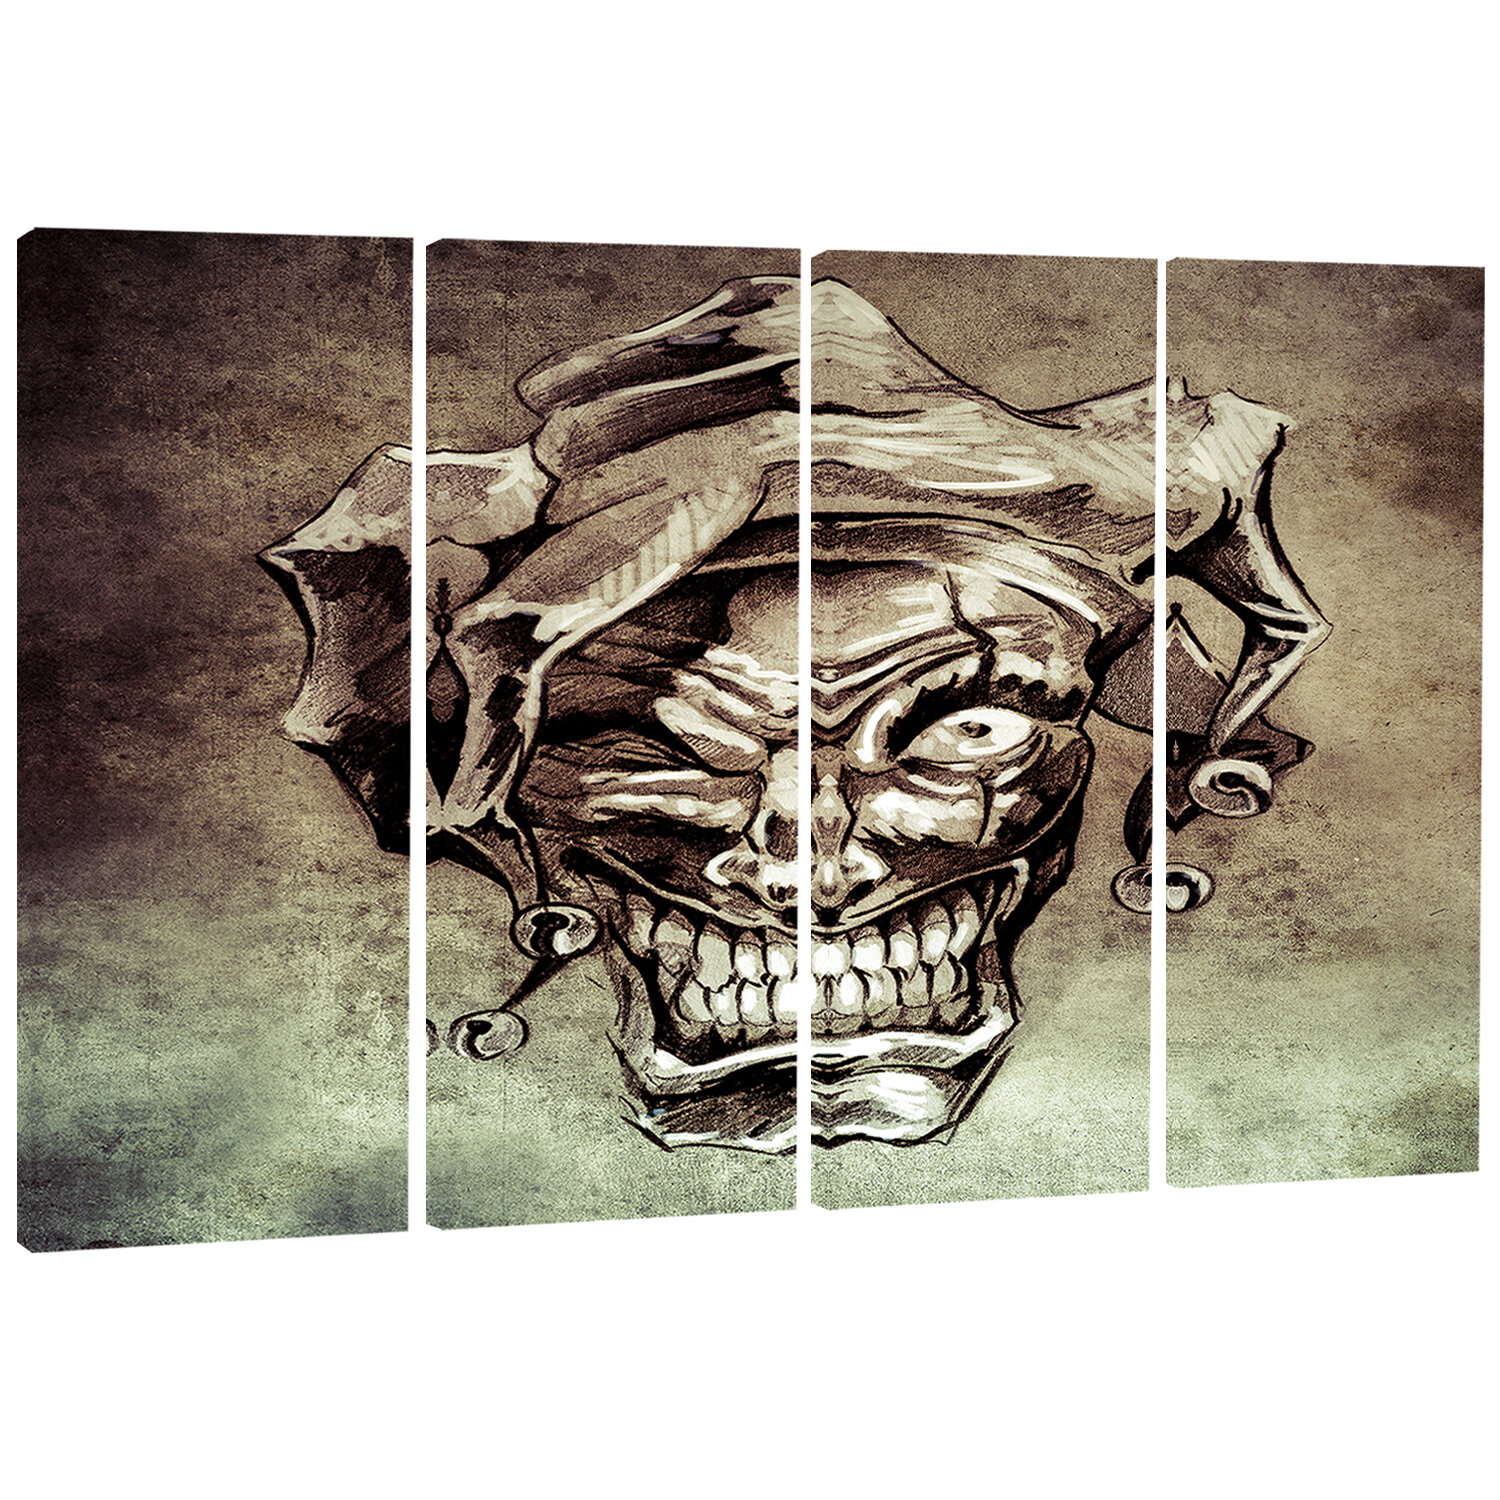 Joker tattoo HD wallpapers | Pxfuel